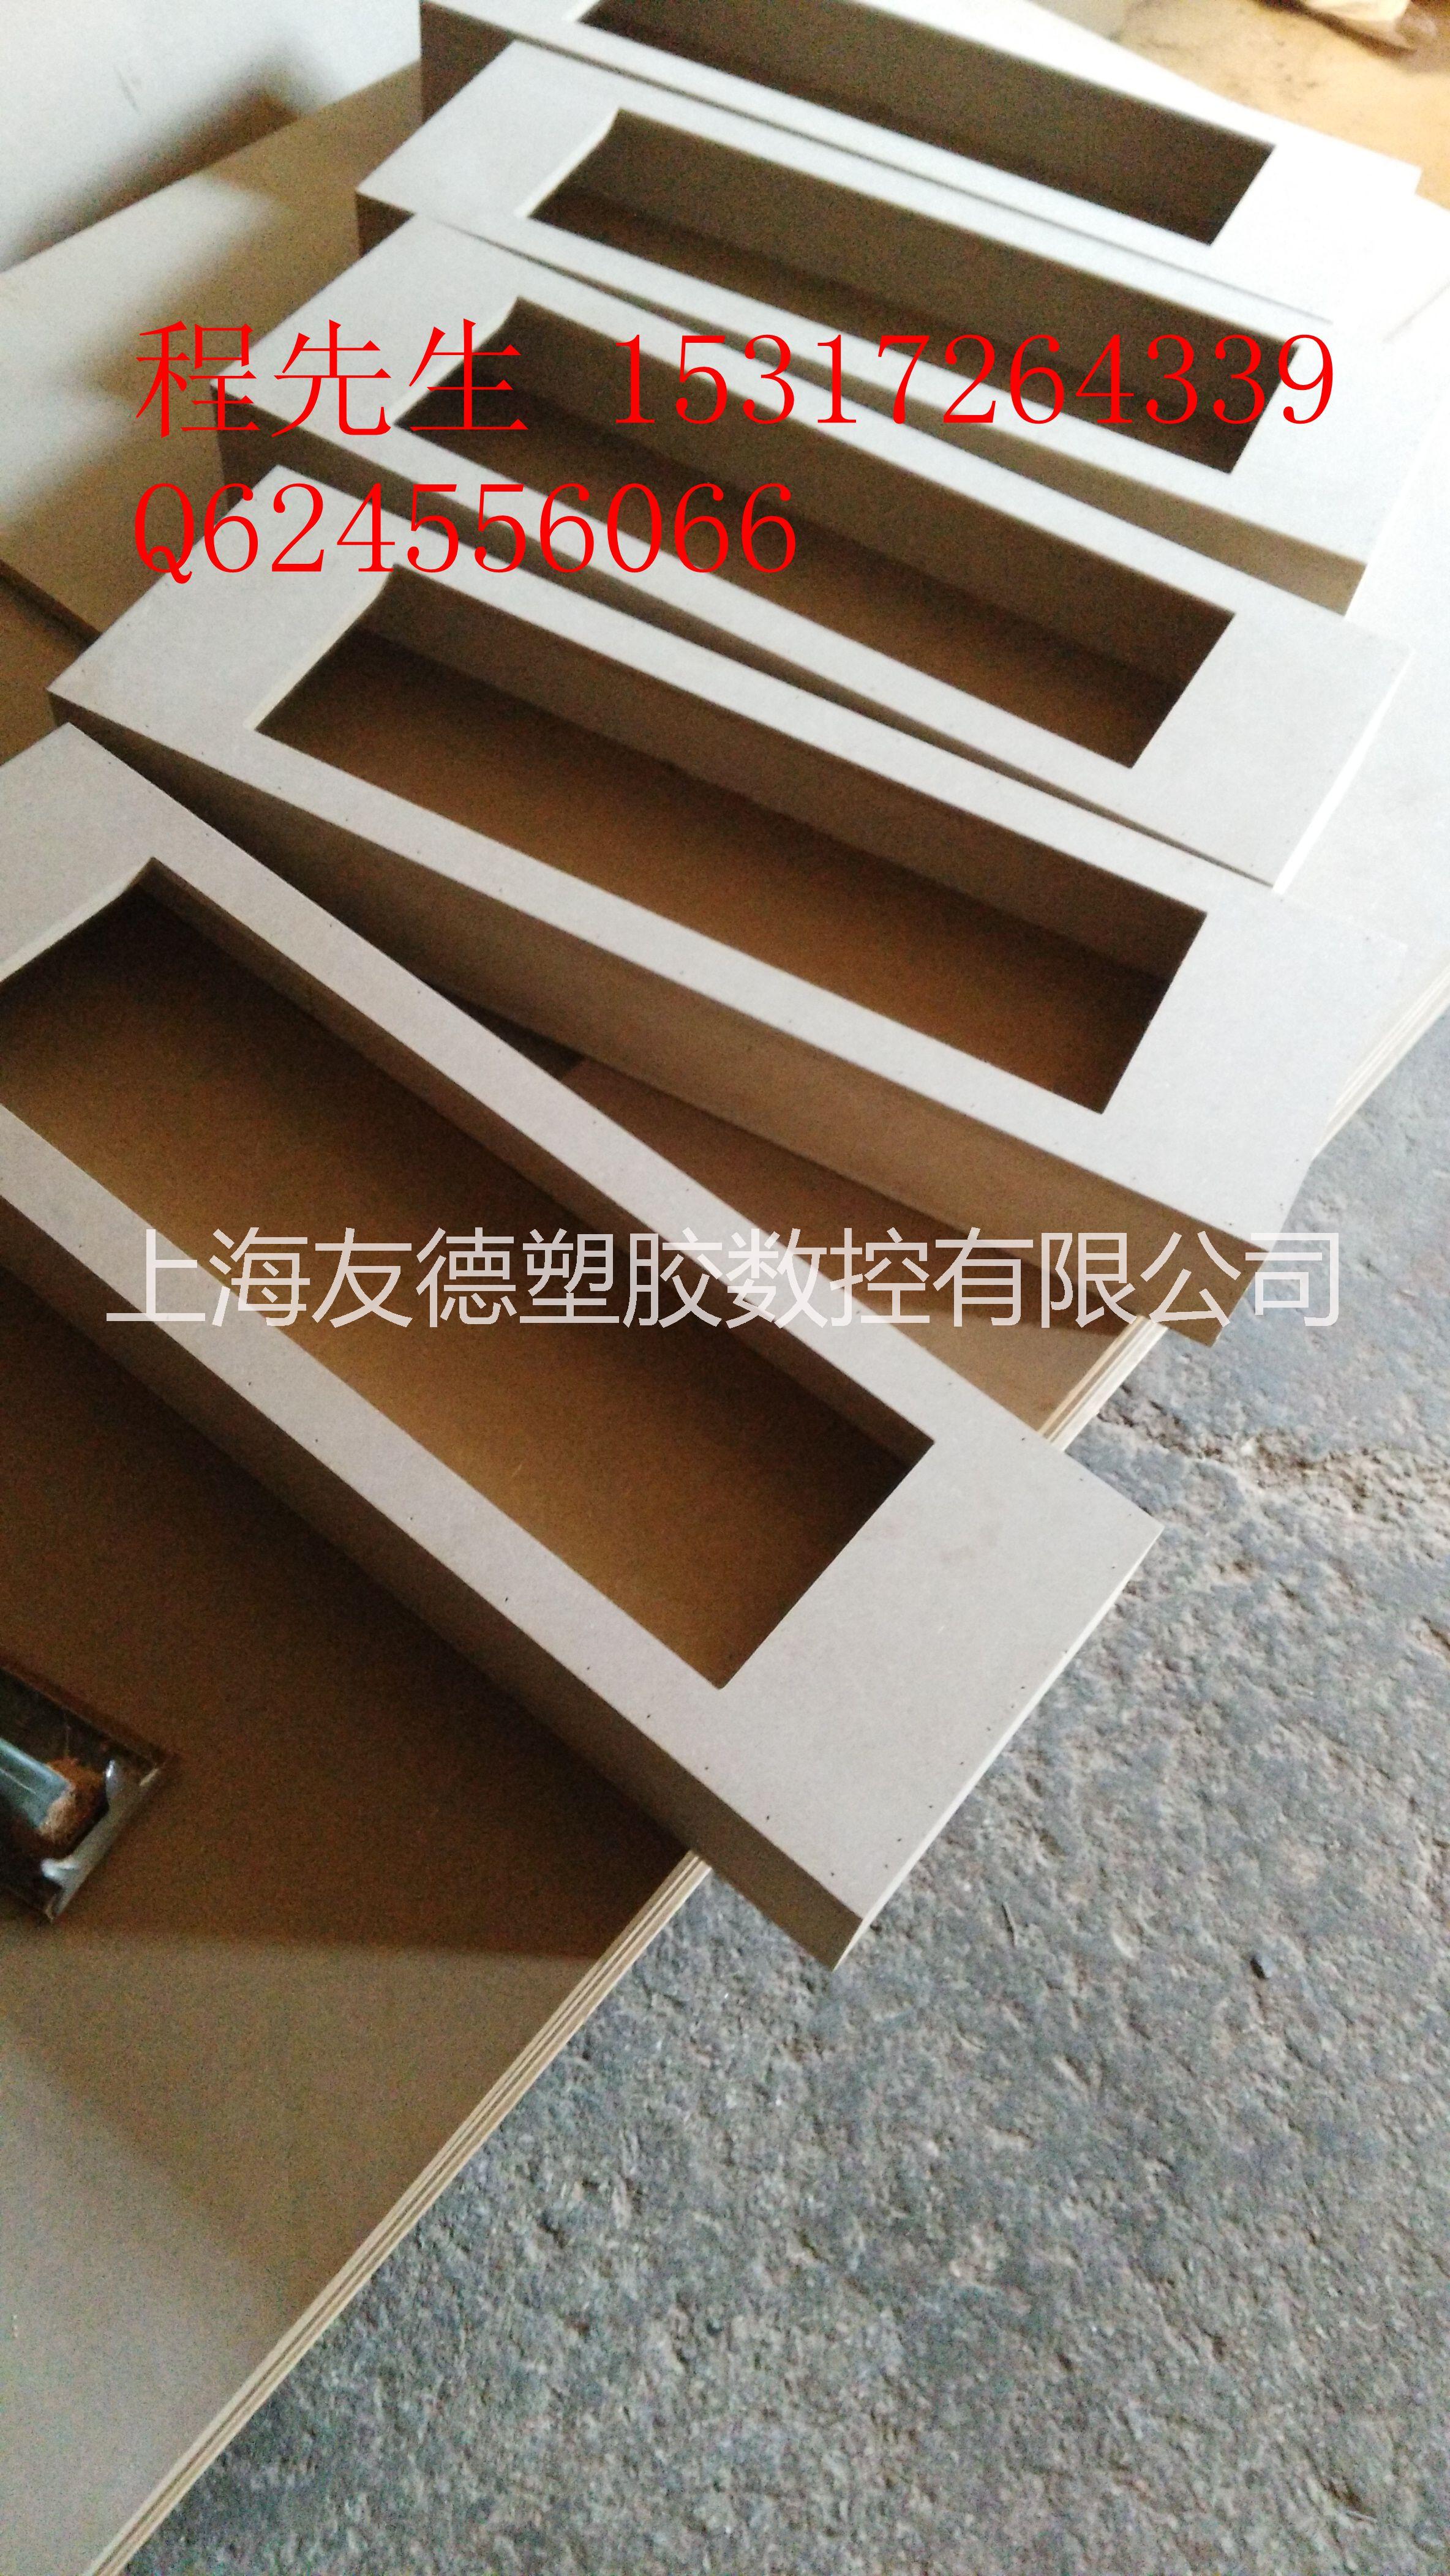 上海嘉定密度板雕刻加工批发